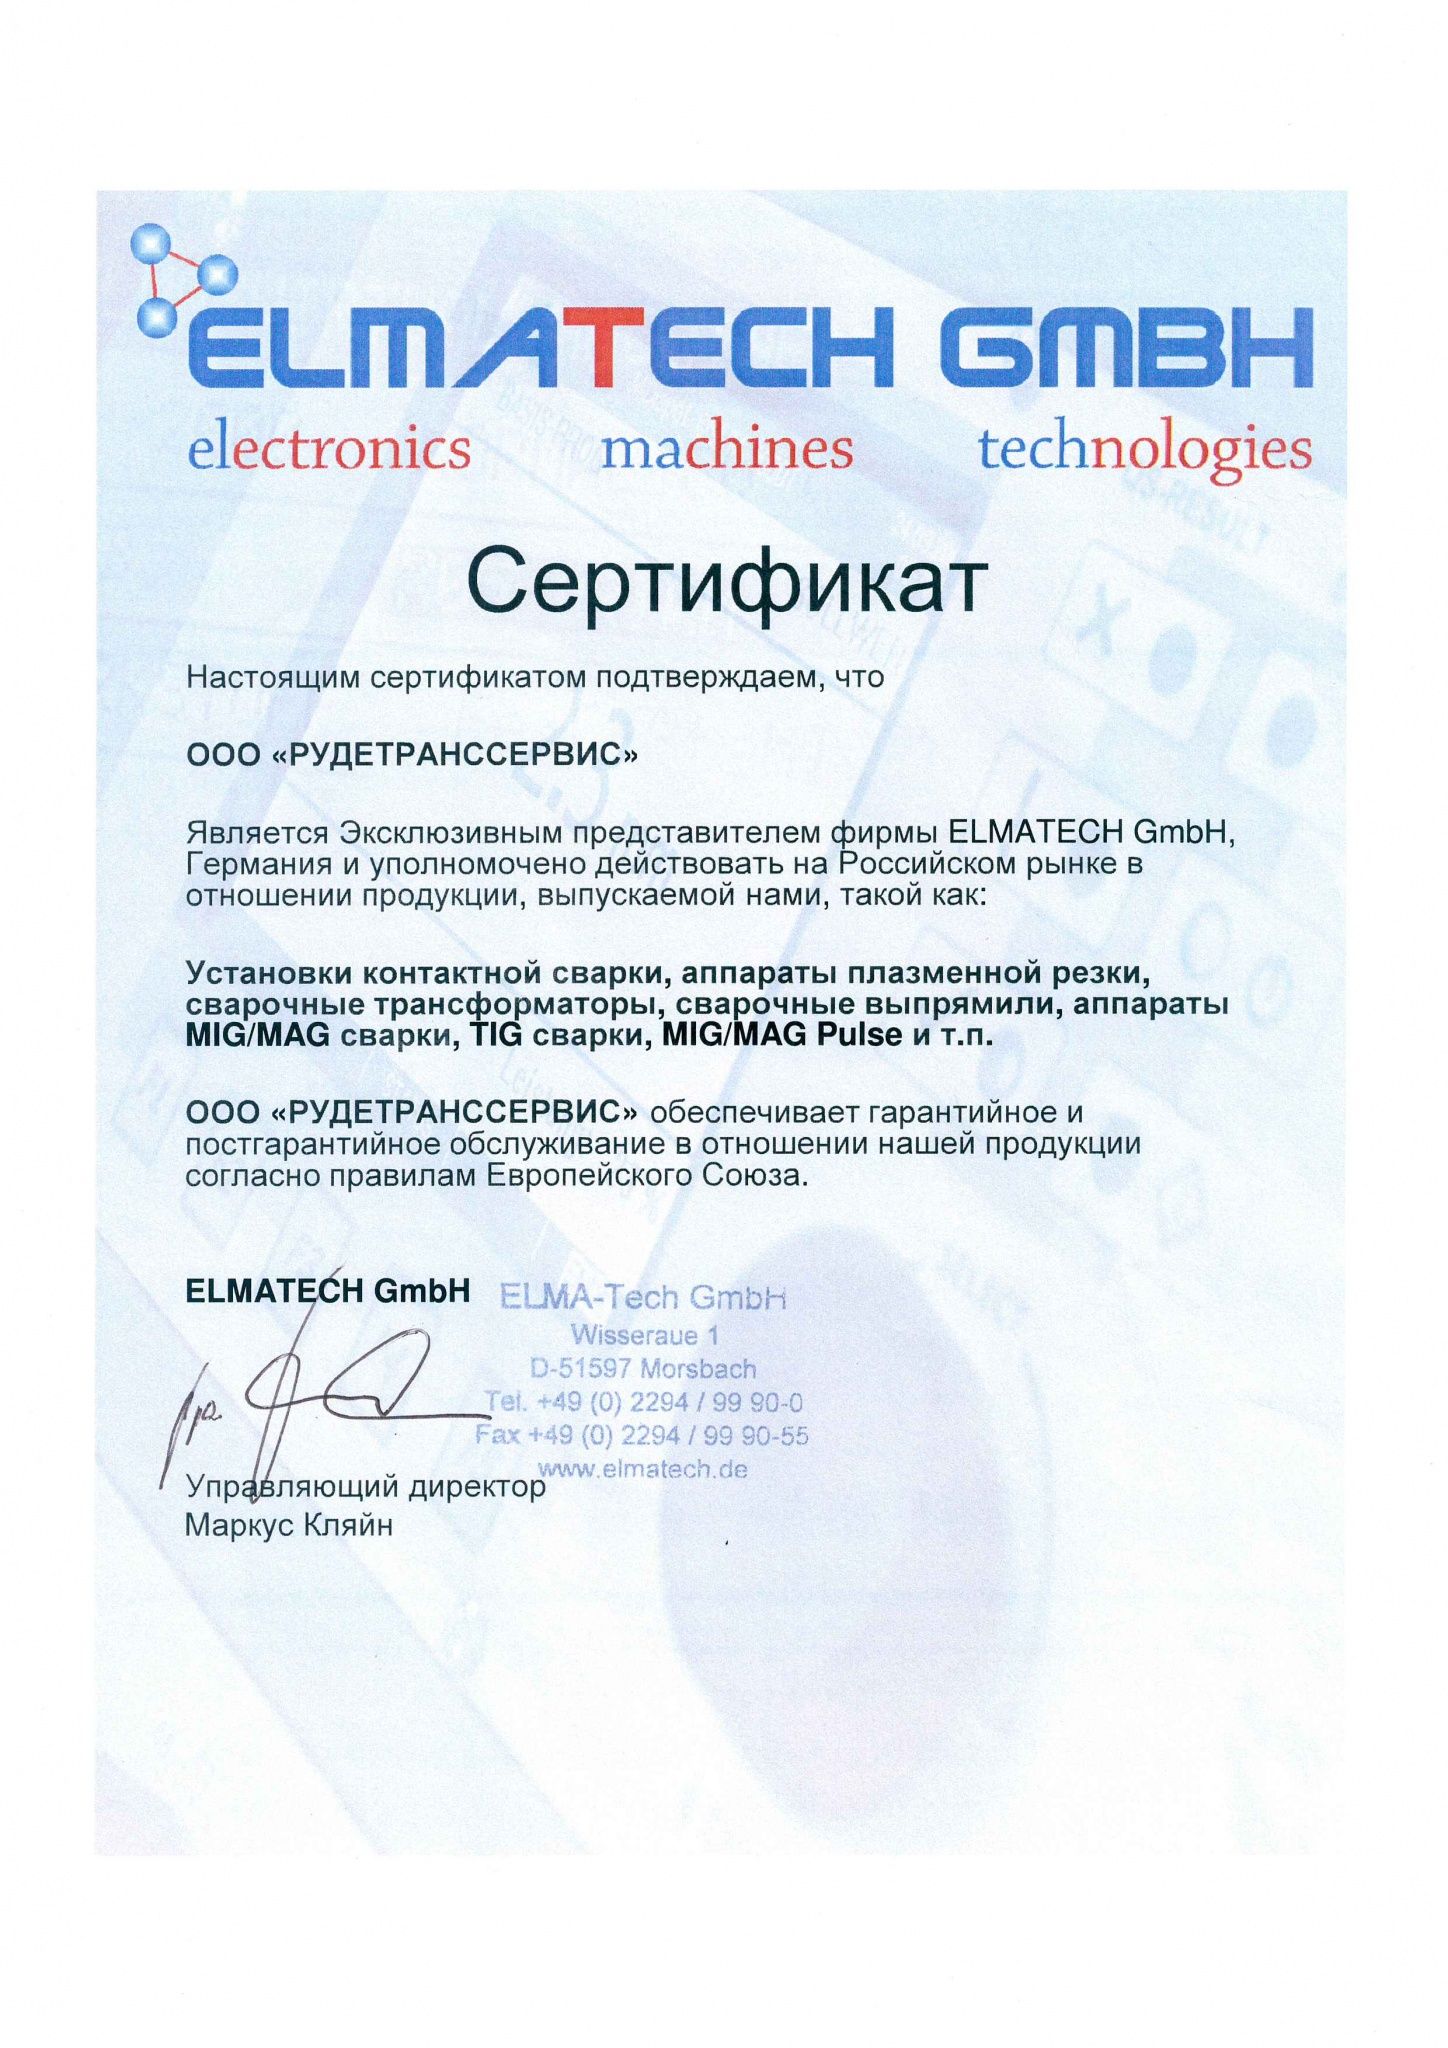 Сертификат представительства